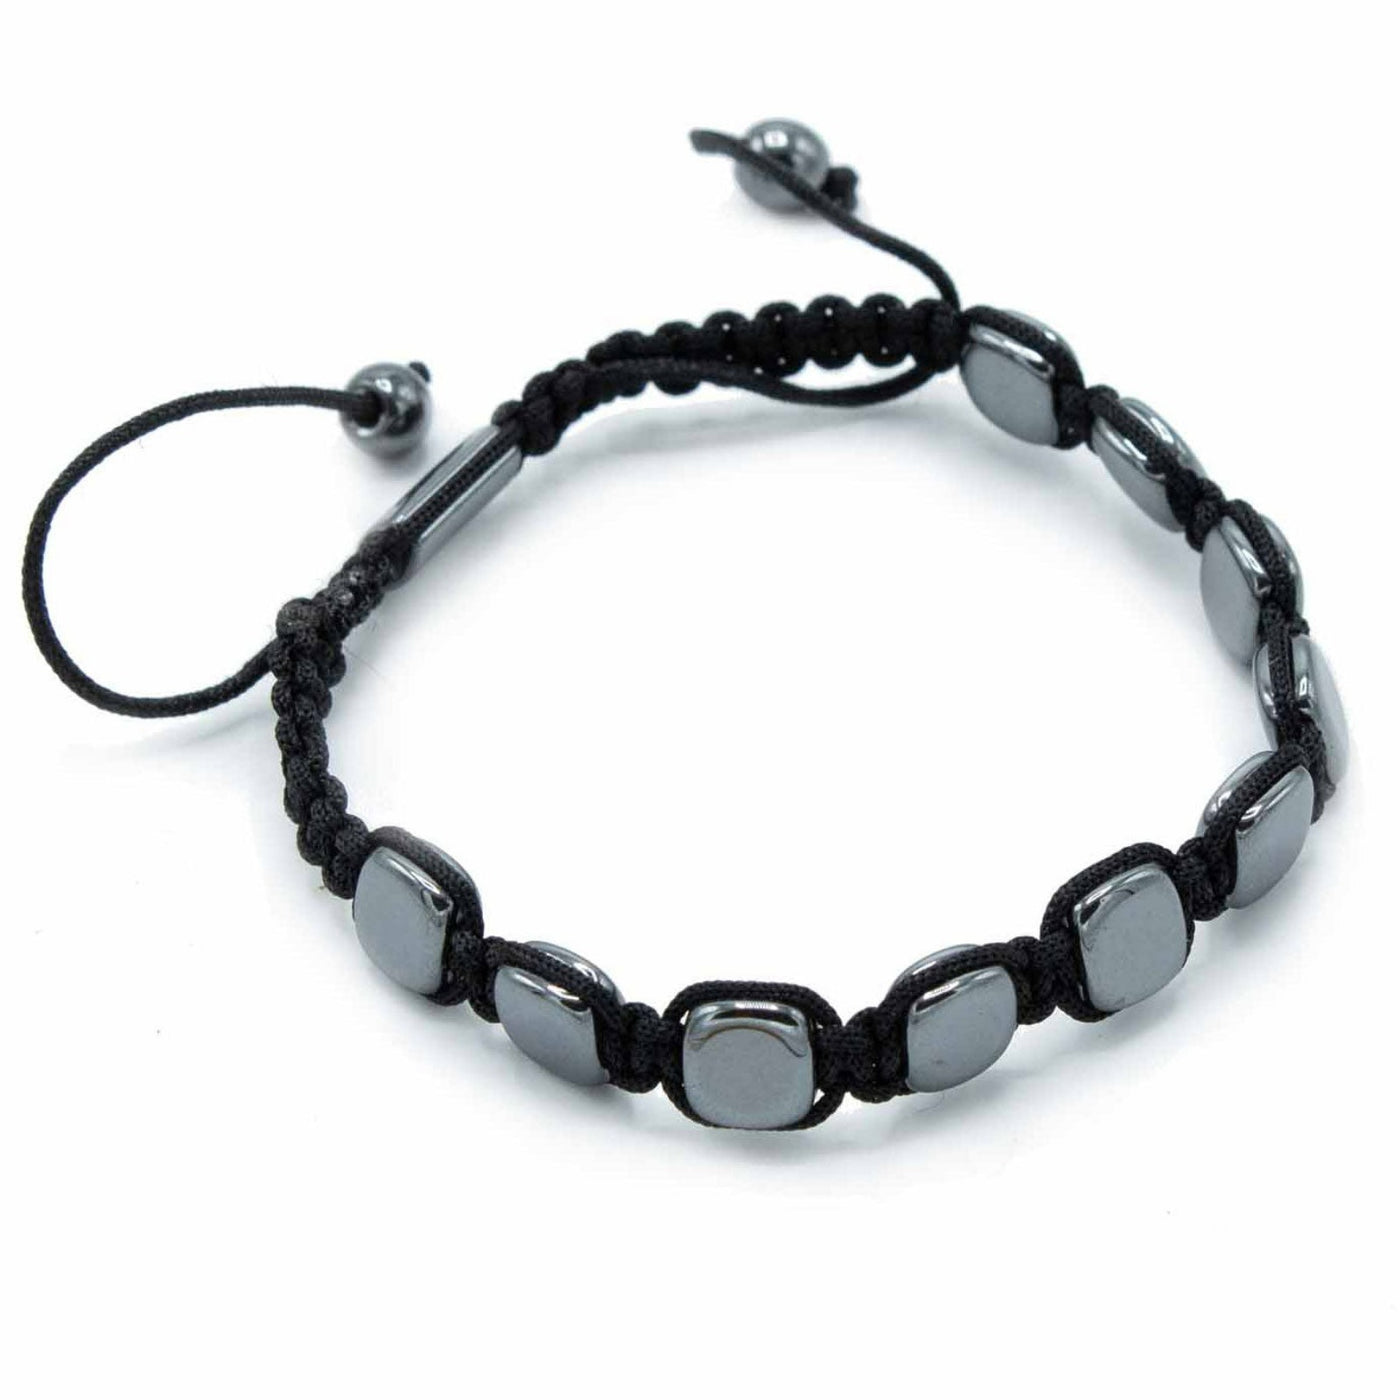 Unisex Hematite Rounded Squares Beads Bracelet With Macrame Knot.